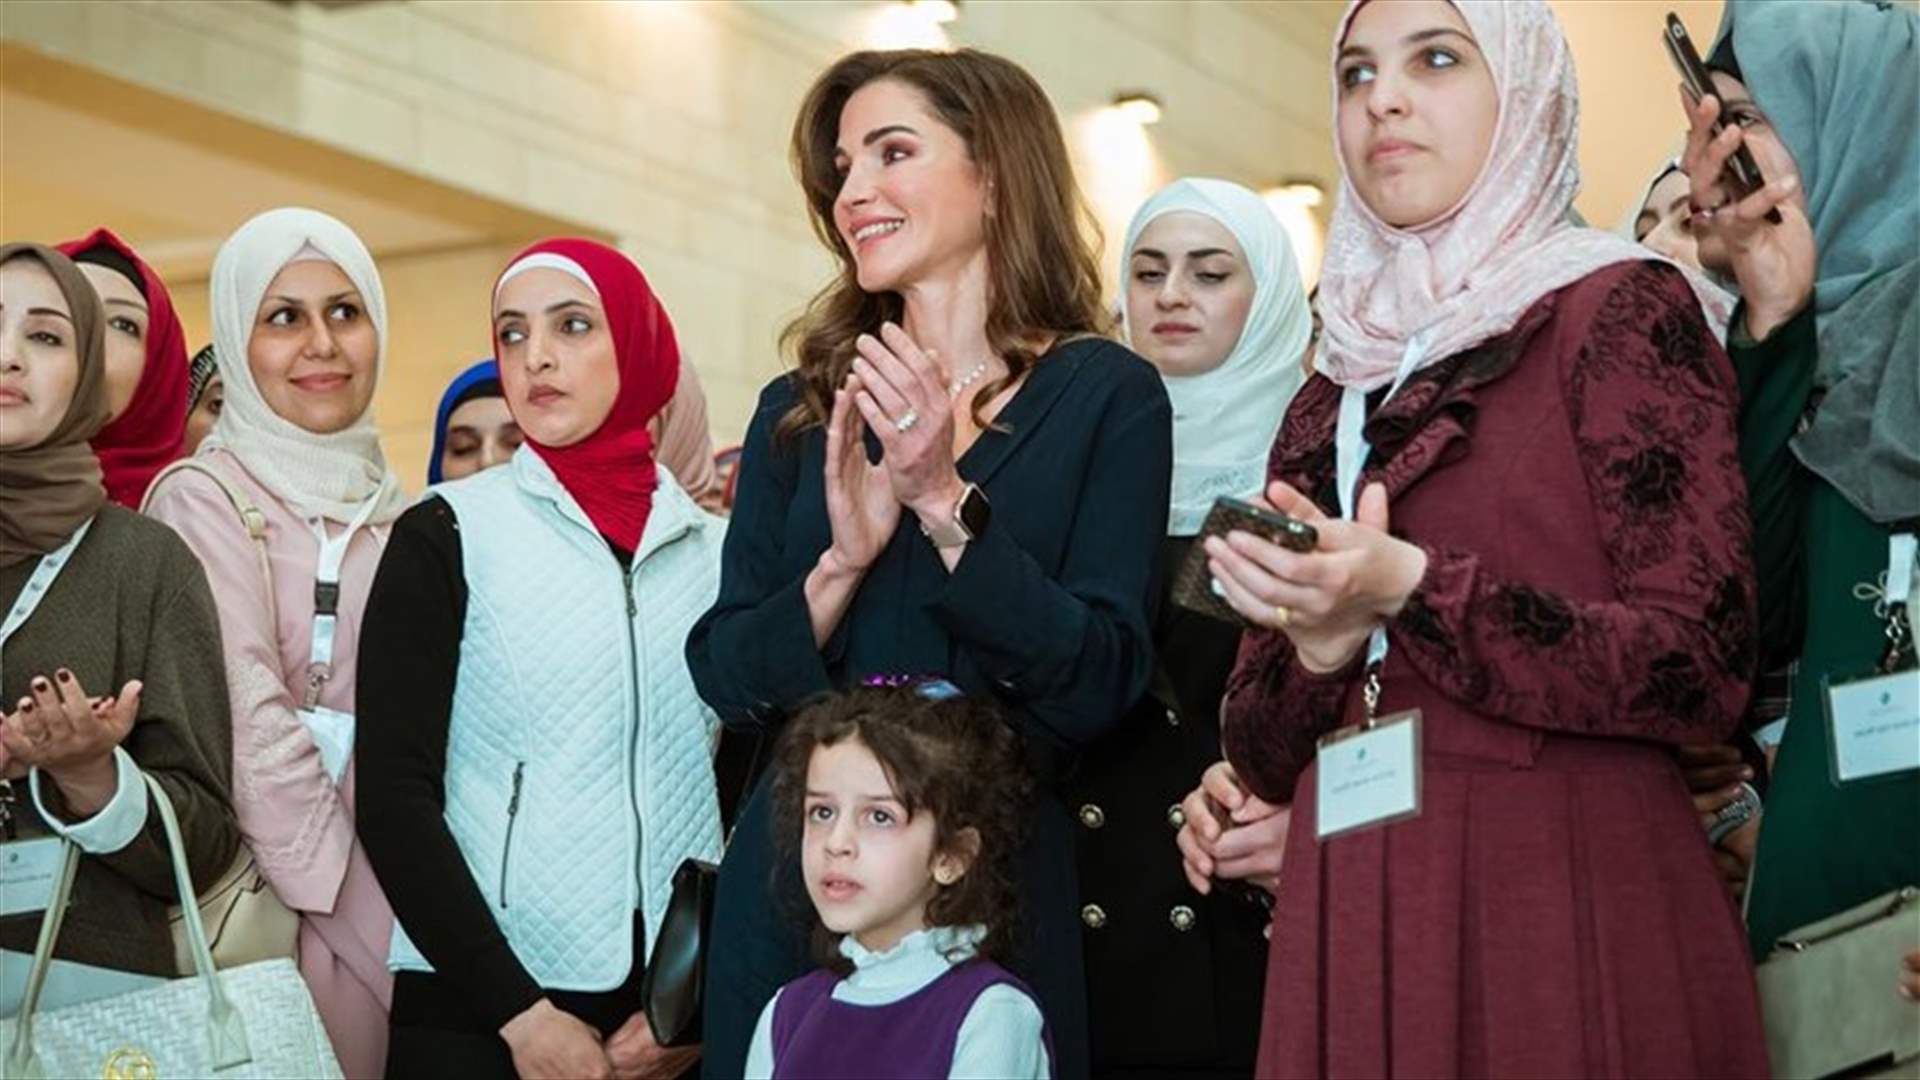 ما قصّة الطفلة التي رافقت الملكة رانيا في جولتها؟ (فيديو)